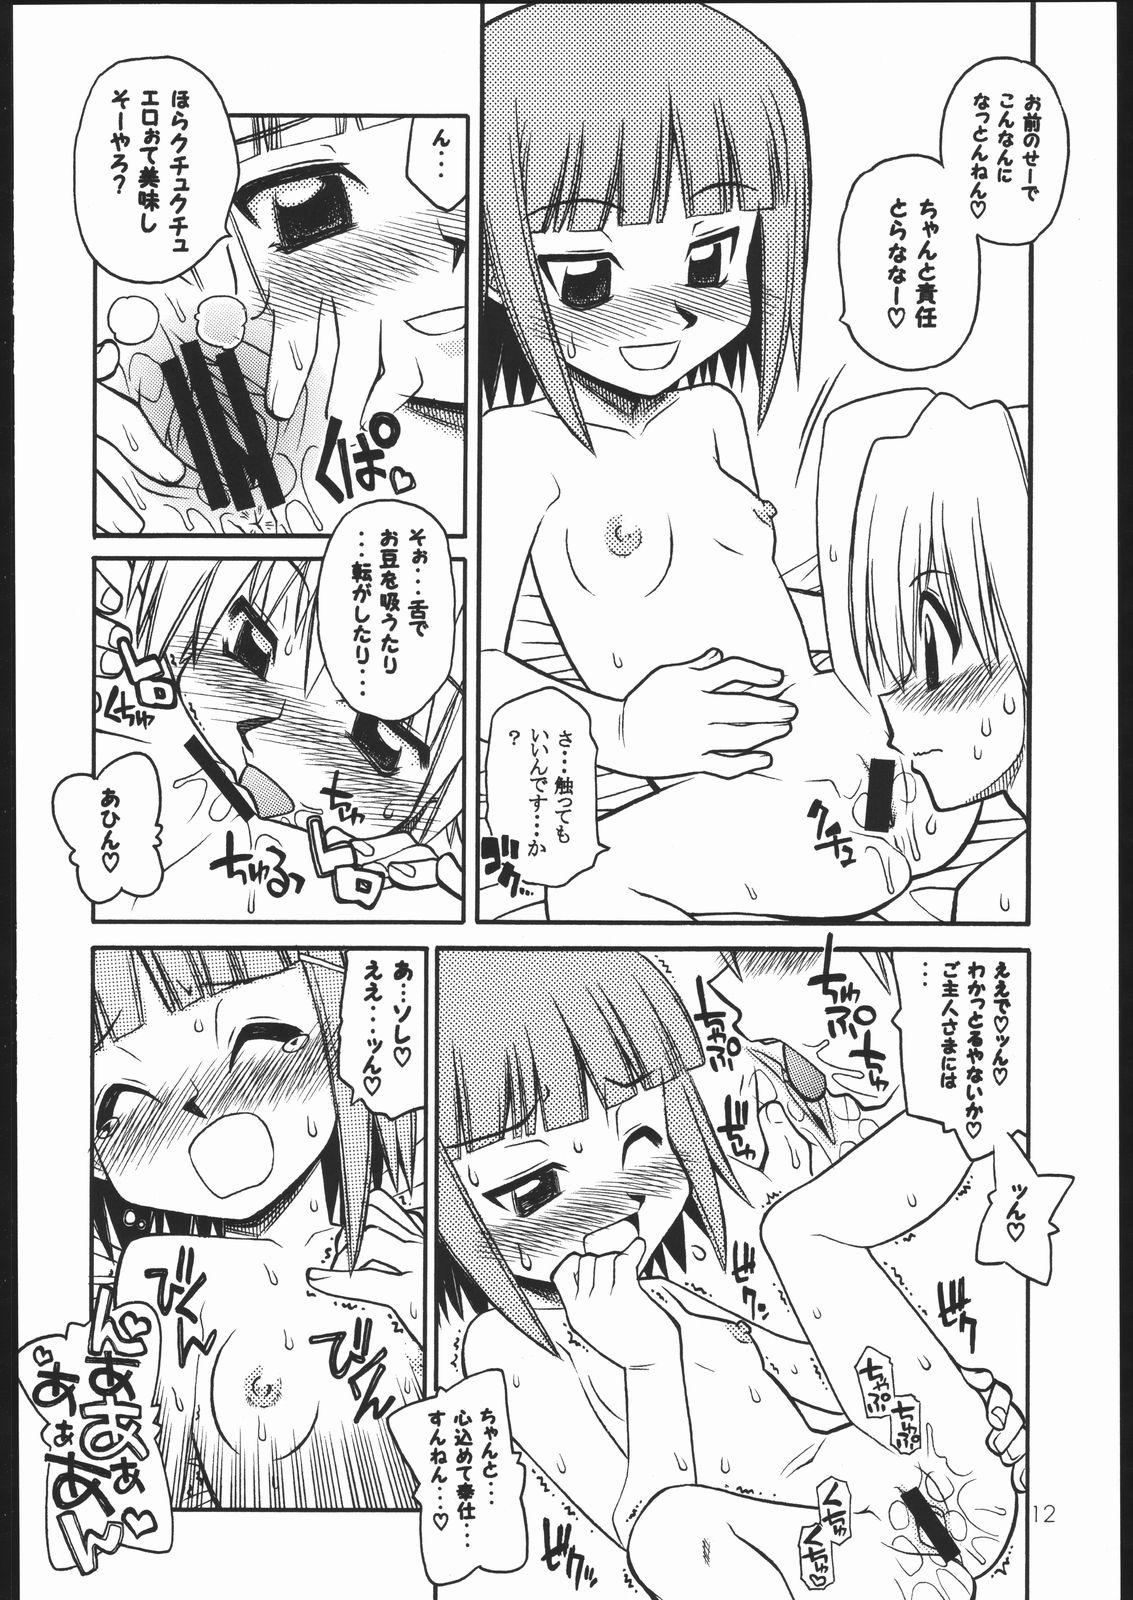 Asshole Hayatte Sanbo! - Hayate no gotoku Bunduda - Page 9